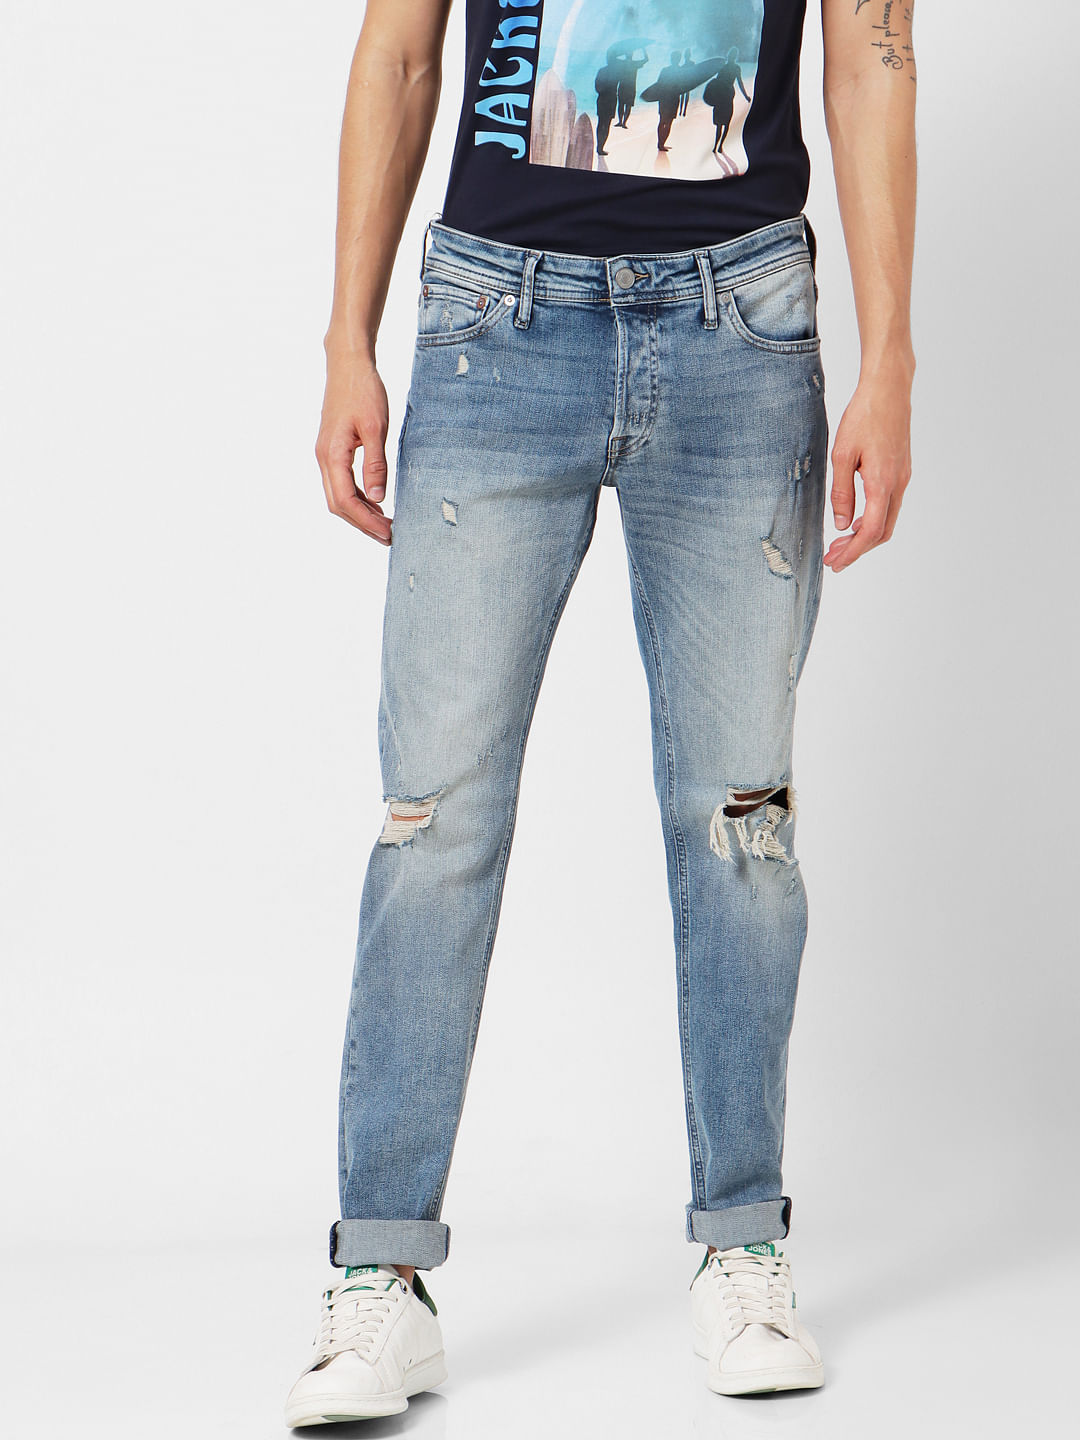 Minx Slim Jeans blau Casual-Look Mode Jeans Slim Jeans 